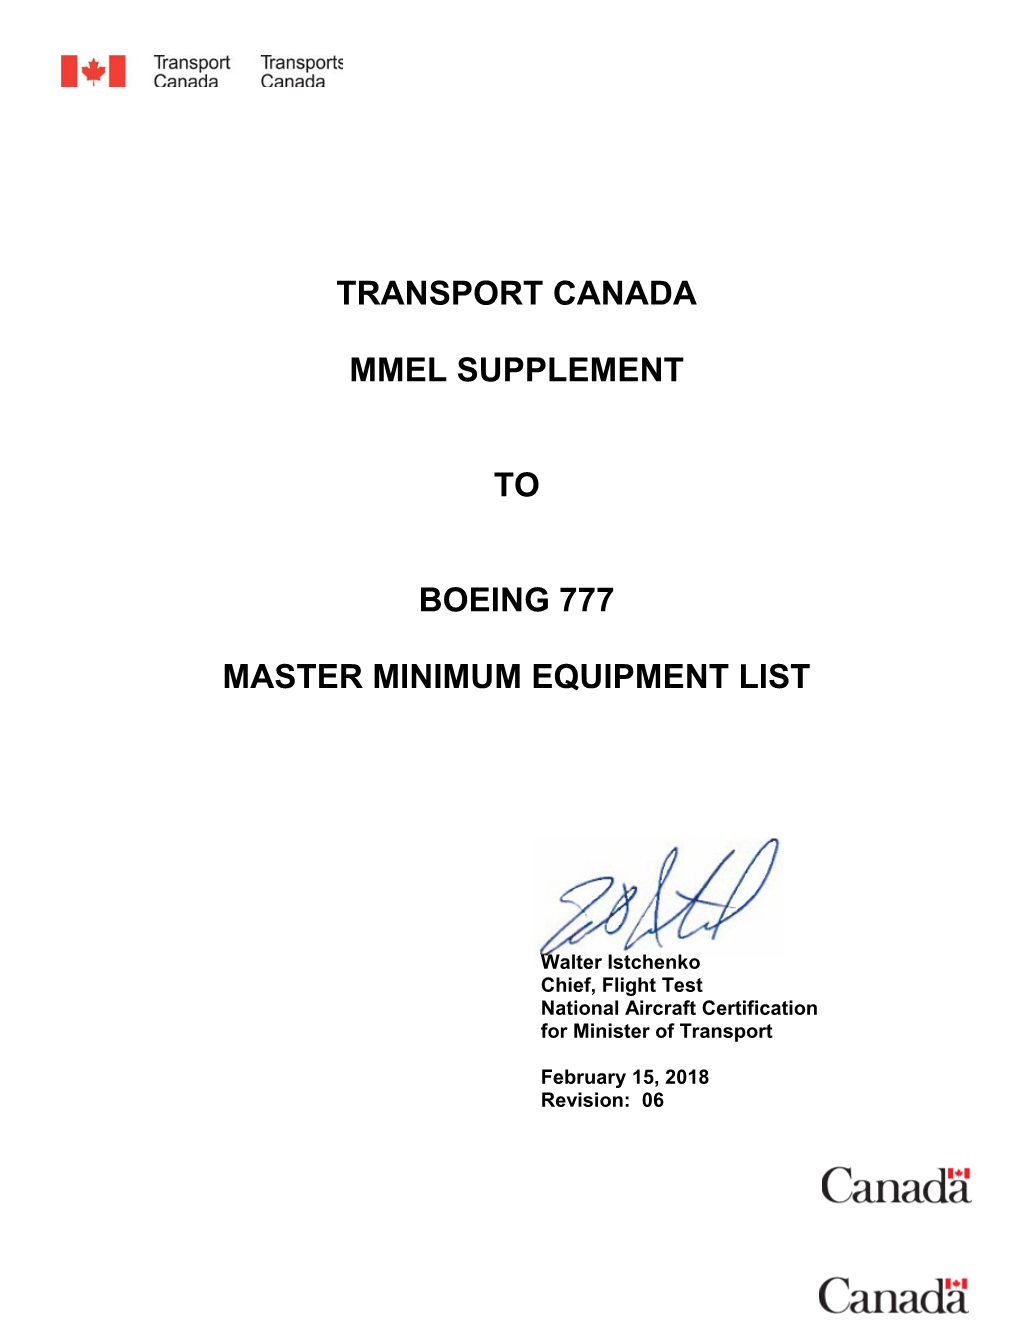 Master Minimum Equipment List s1